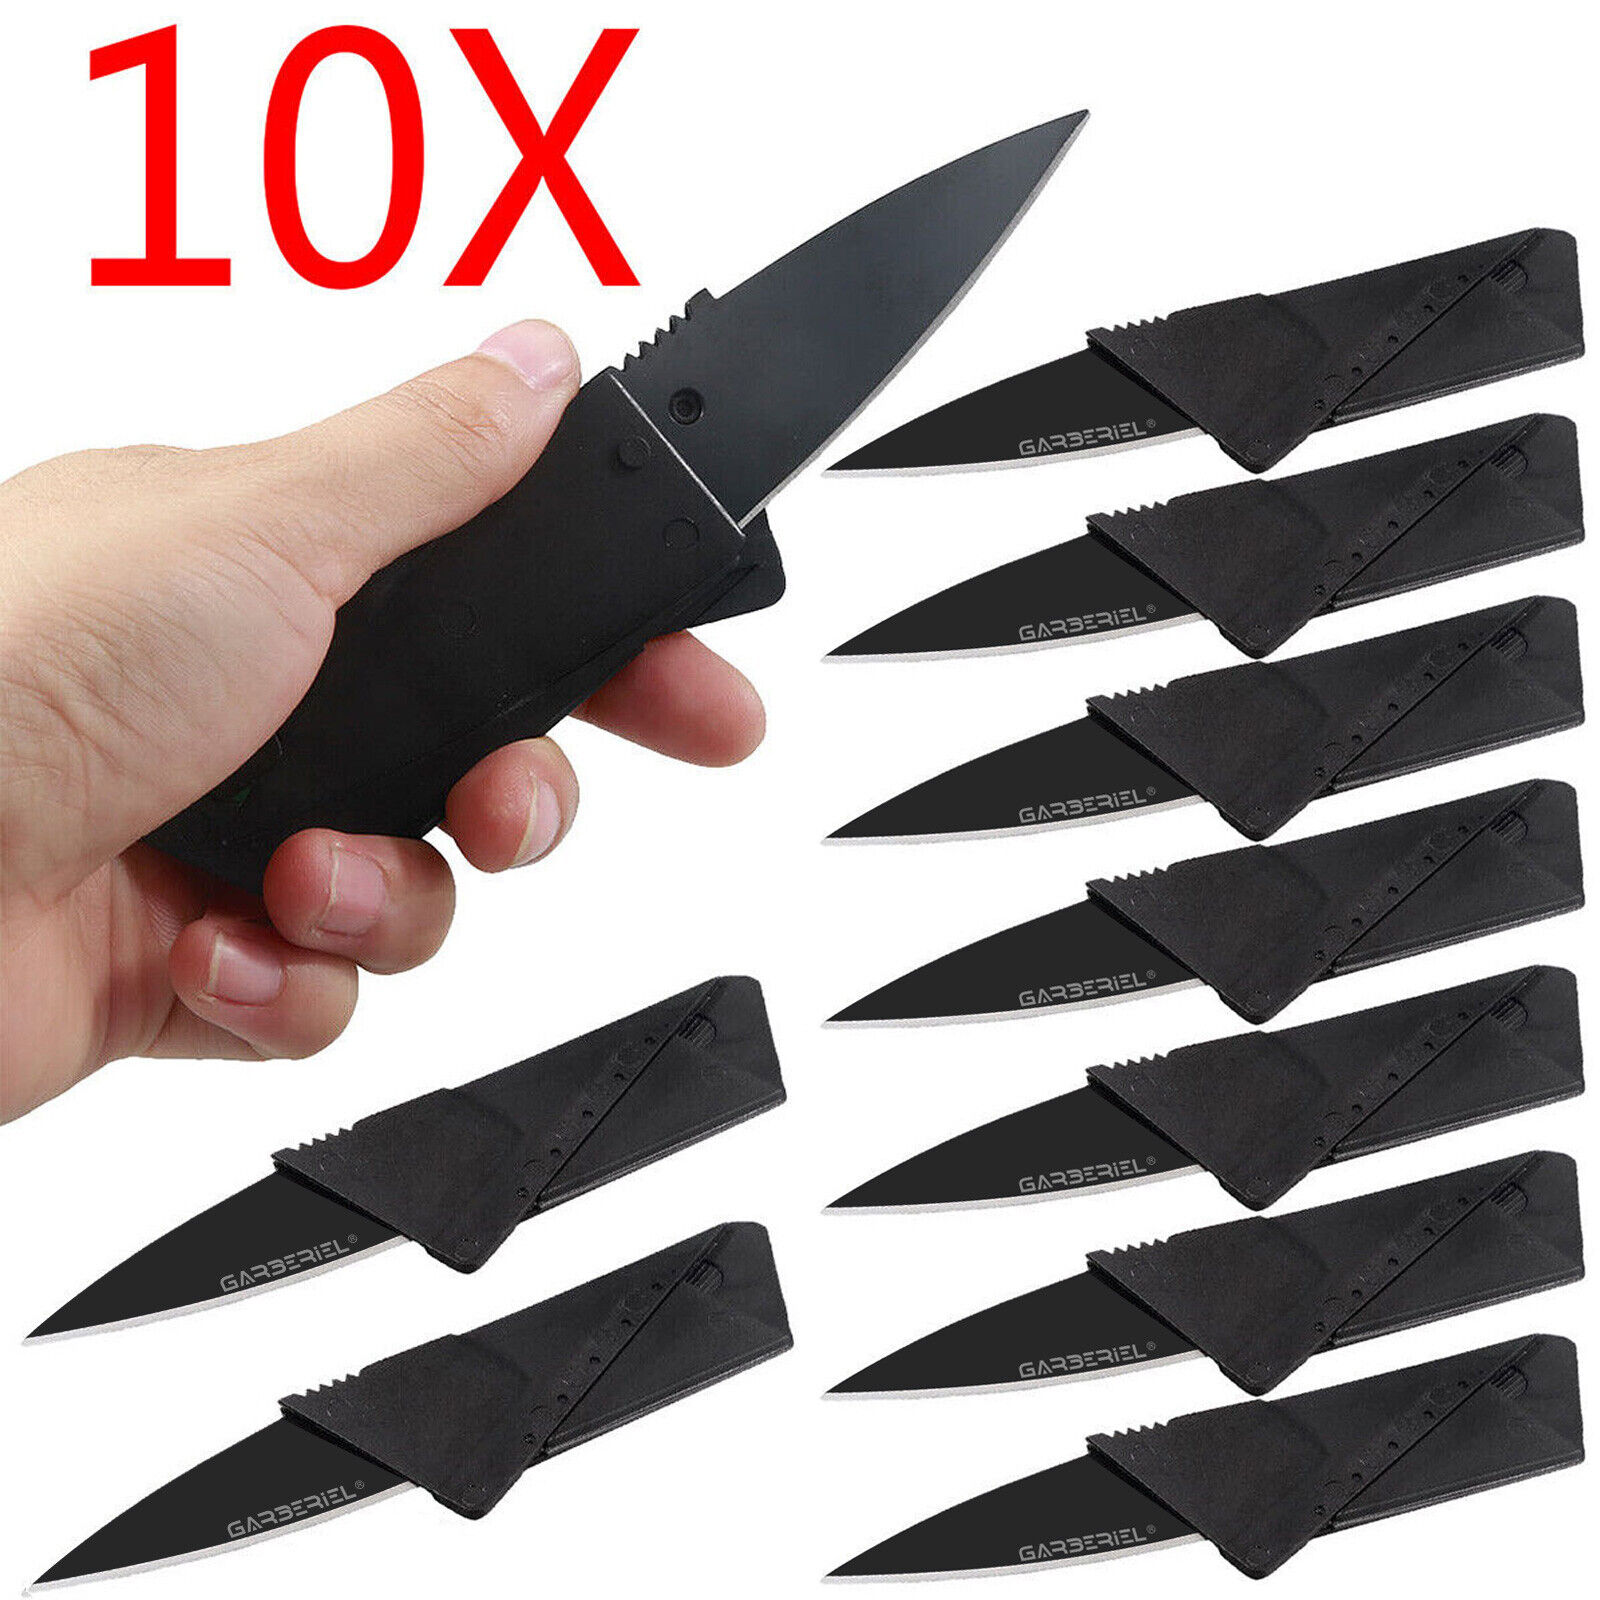 Folding Credit Card Knife Black Wallet Razor Sharp Camping Thin Micro Knives Lot